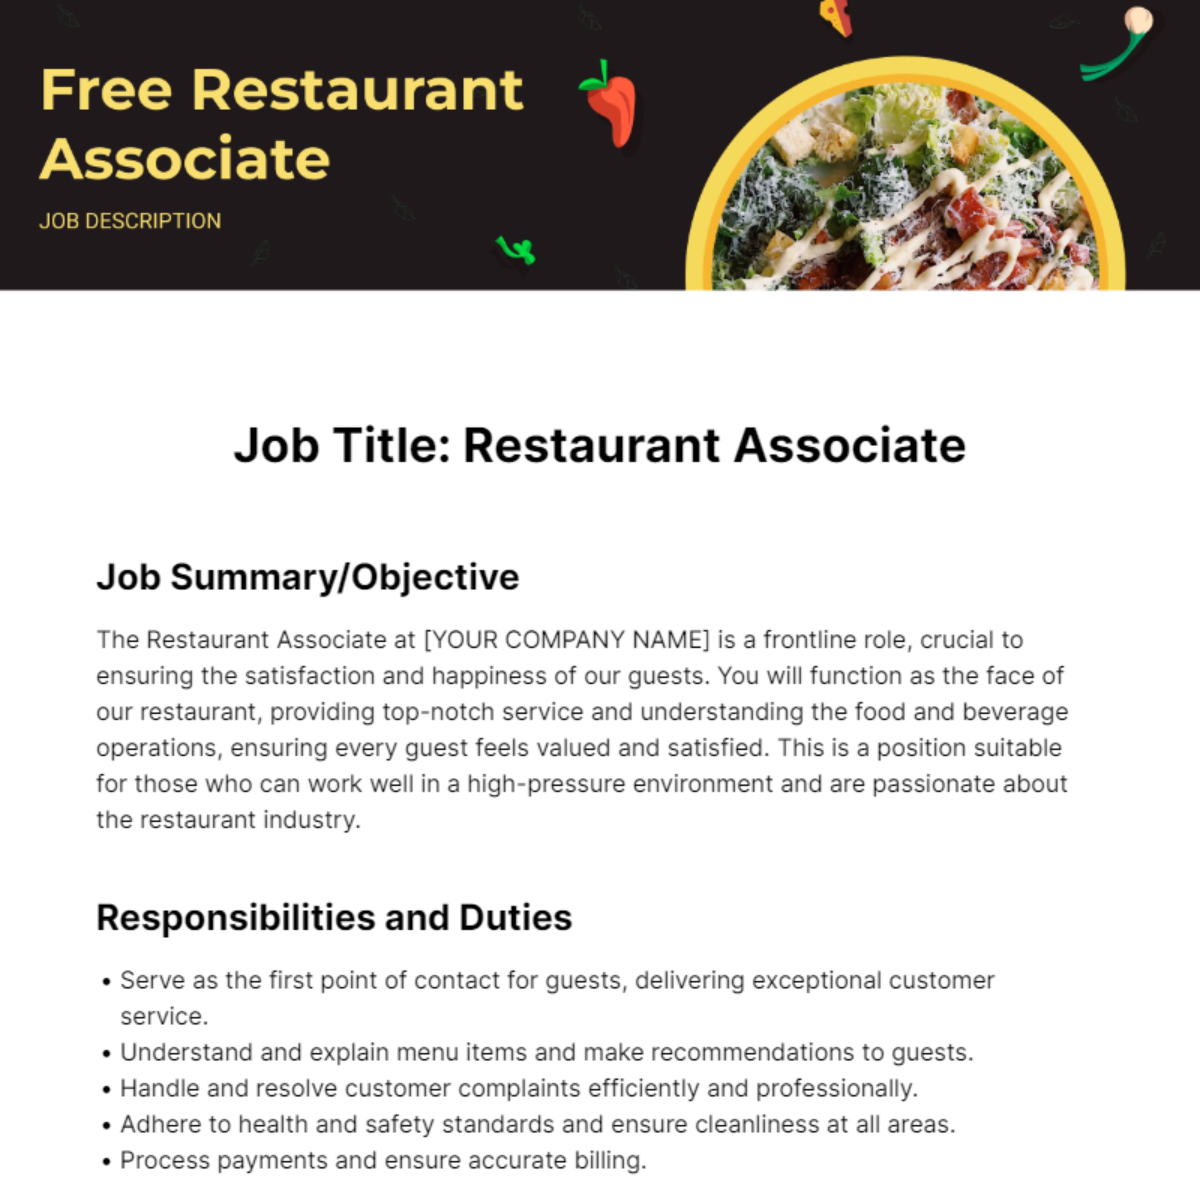 Free Restaurant Associate Job Description Template